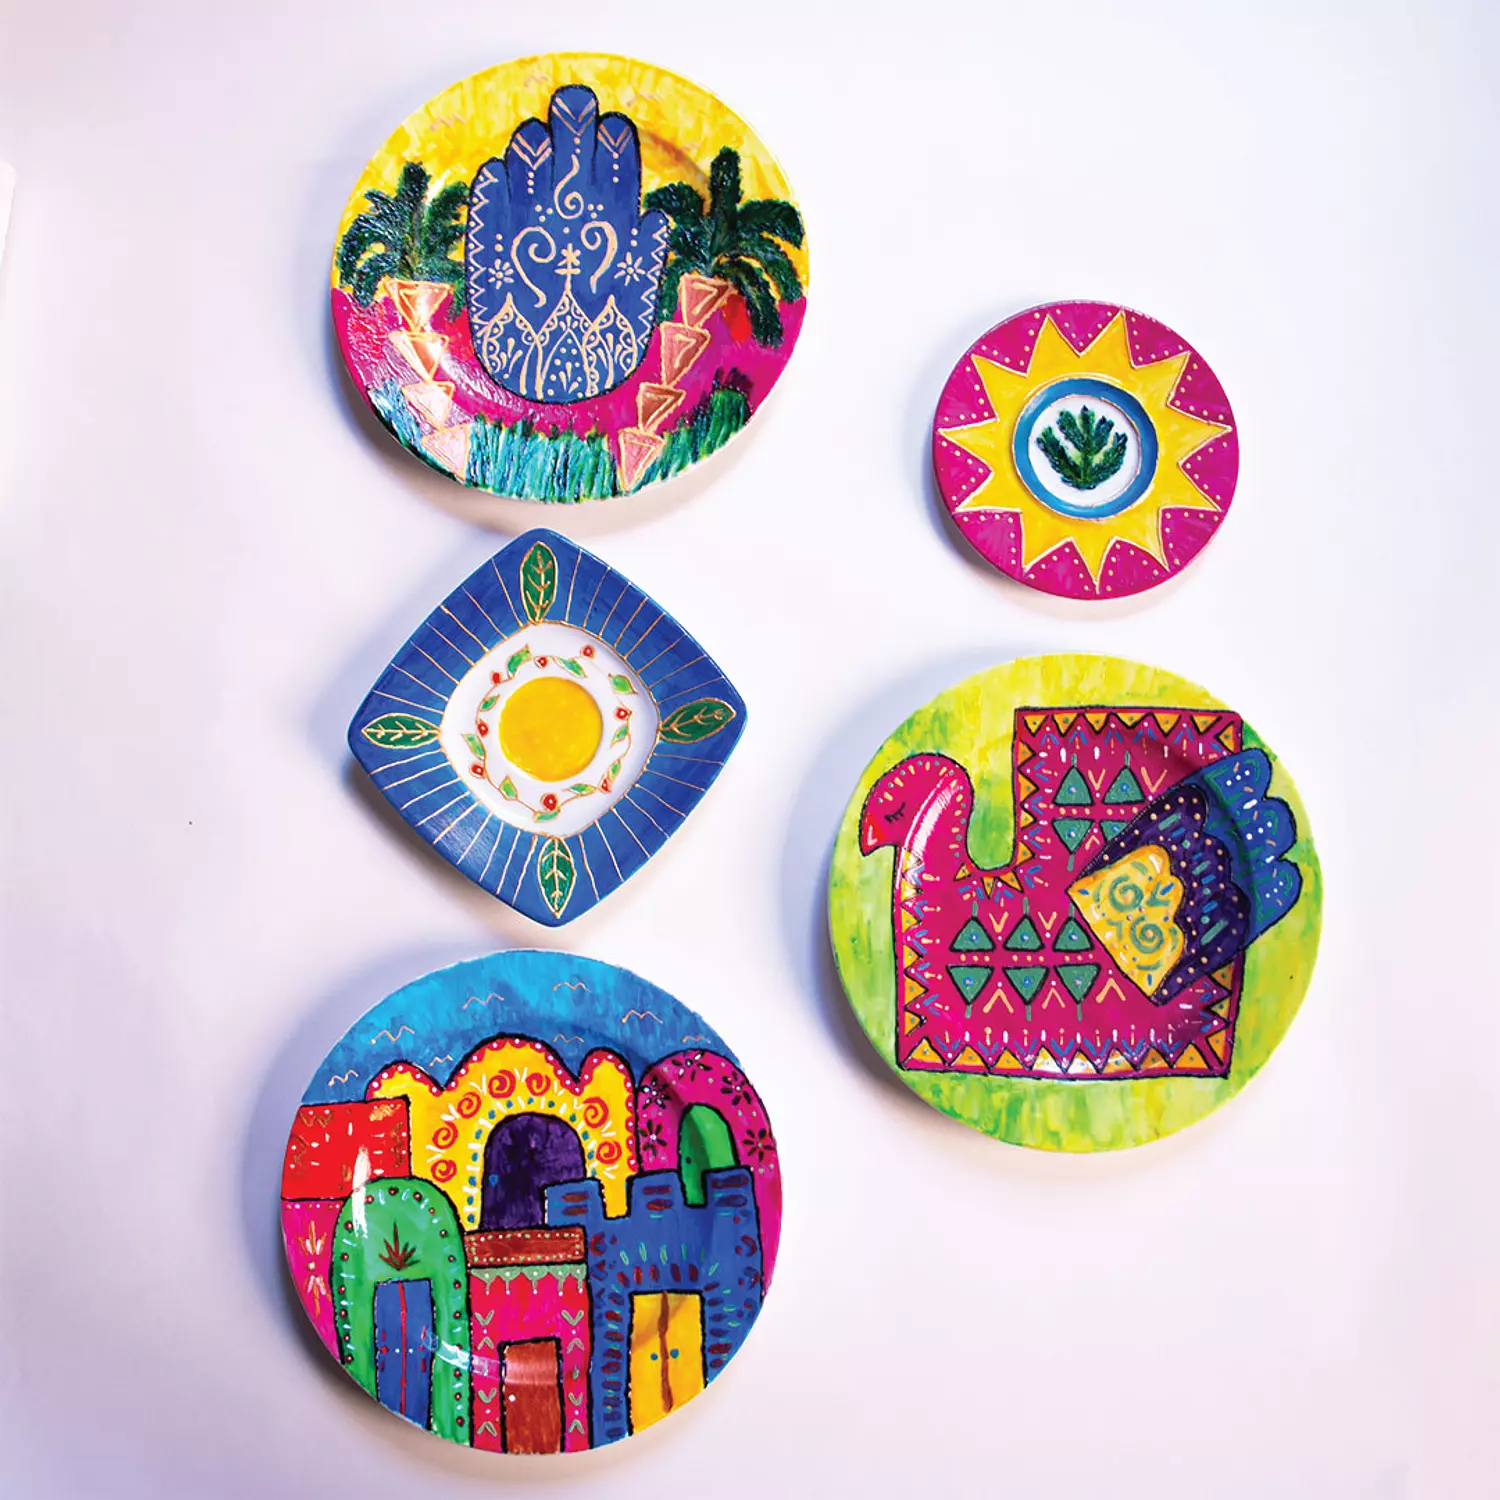 Al-Nuba Decorative Plates  hover image